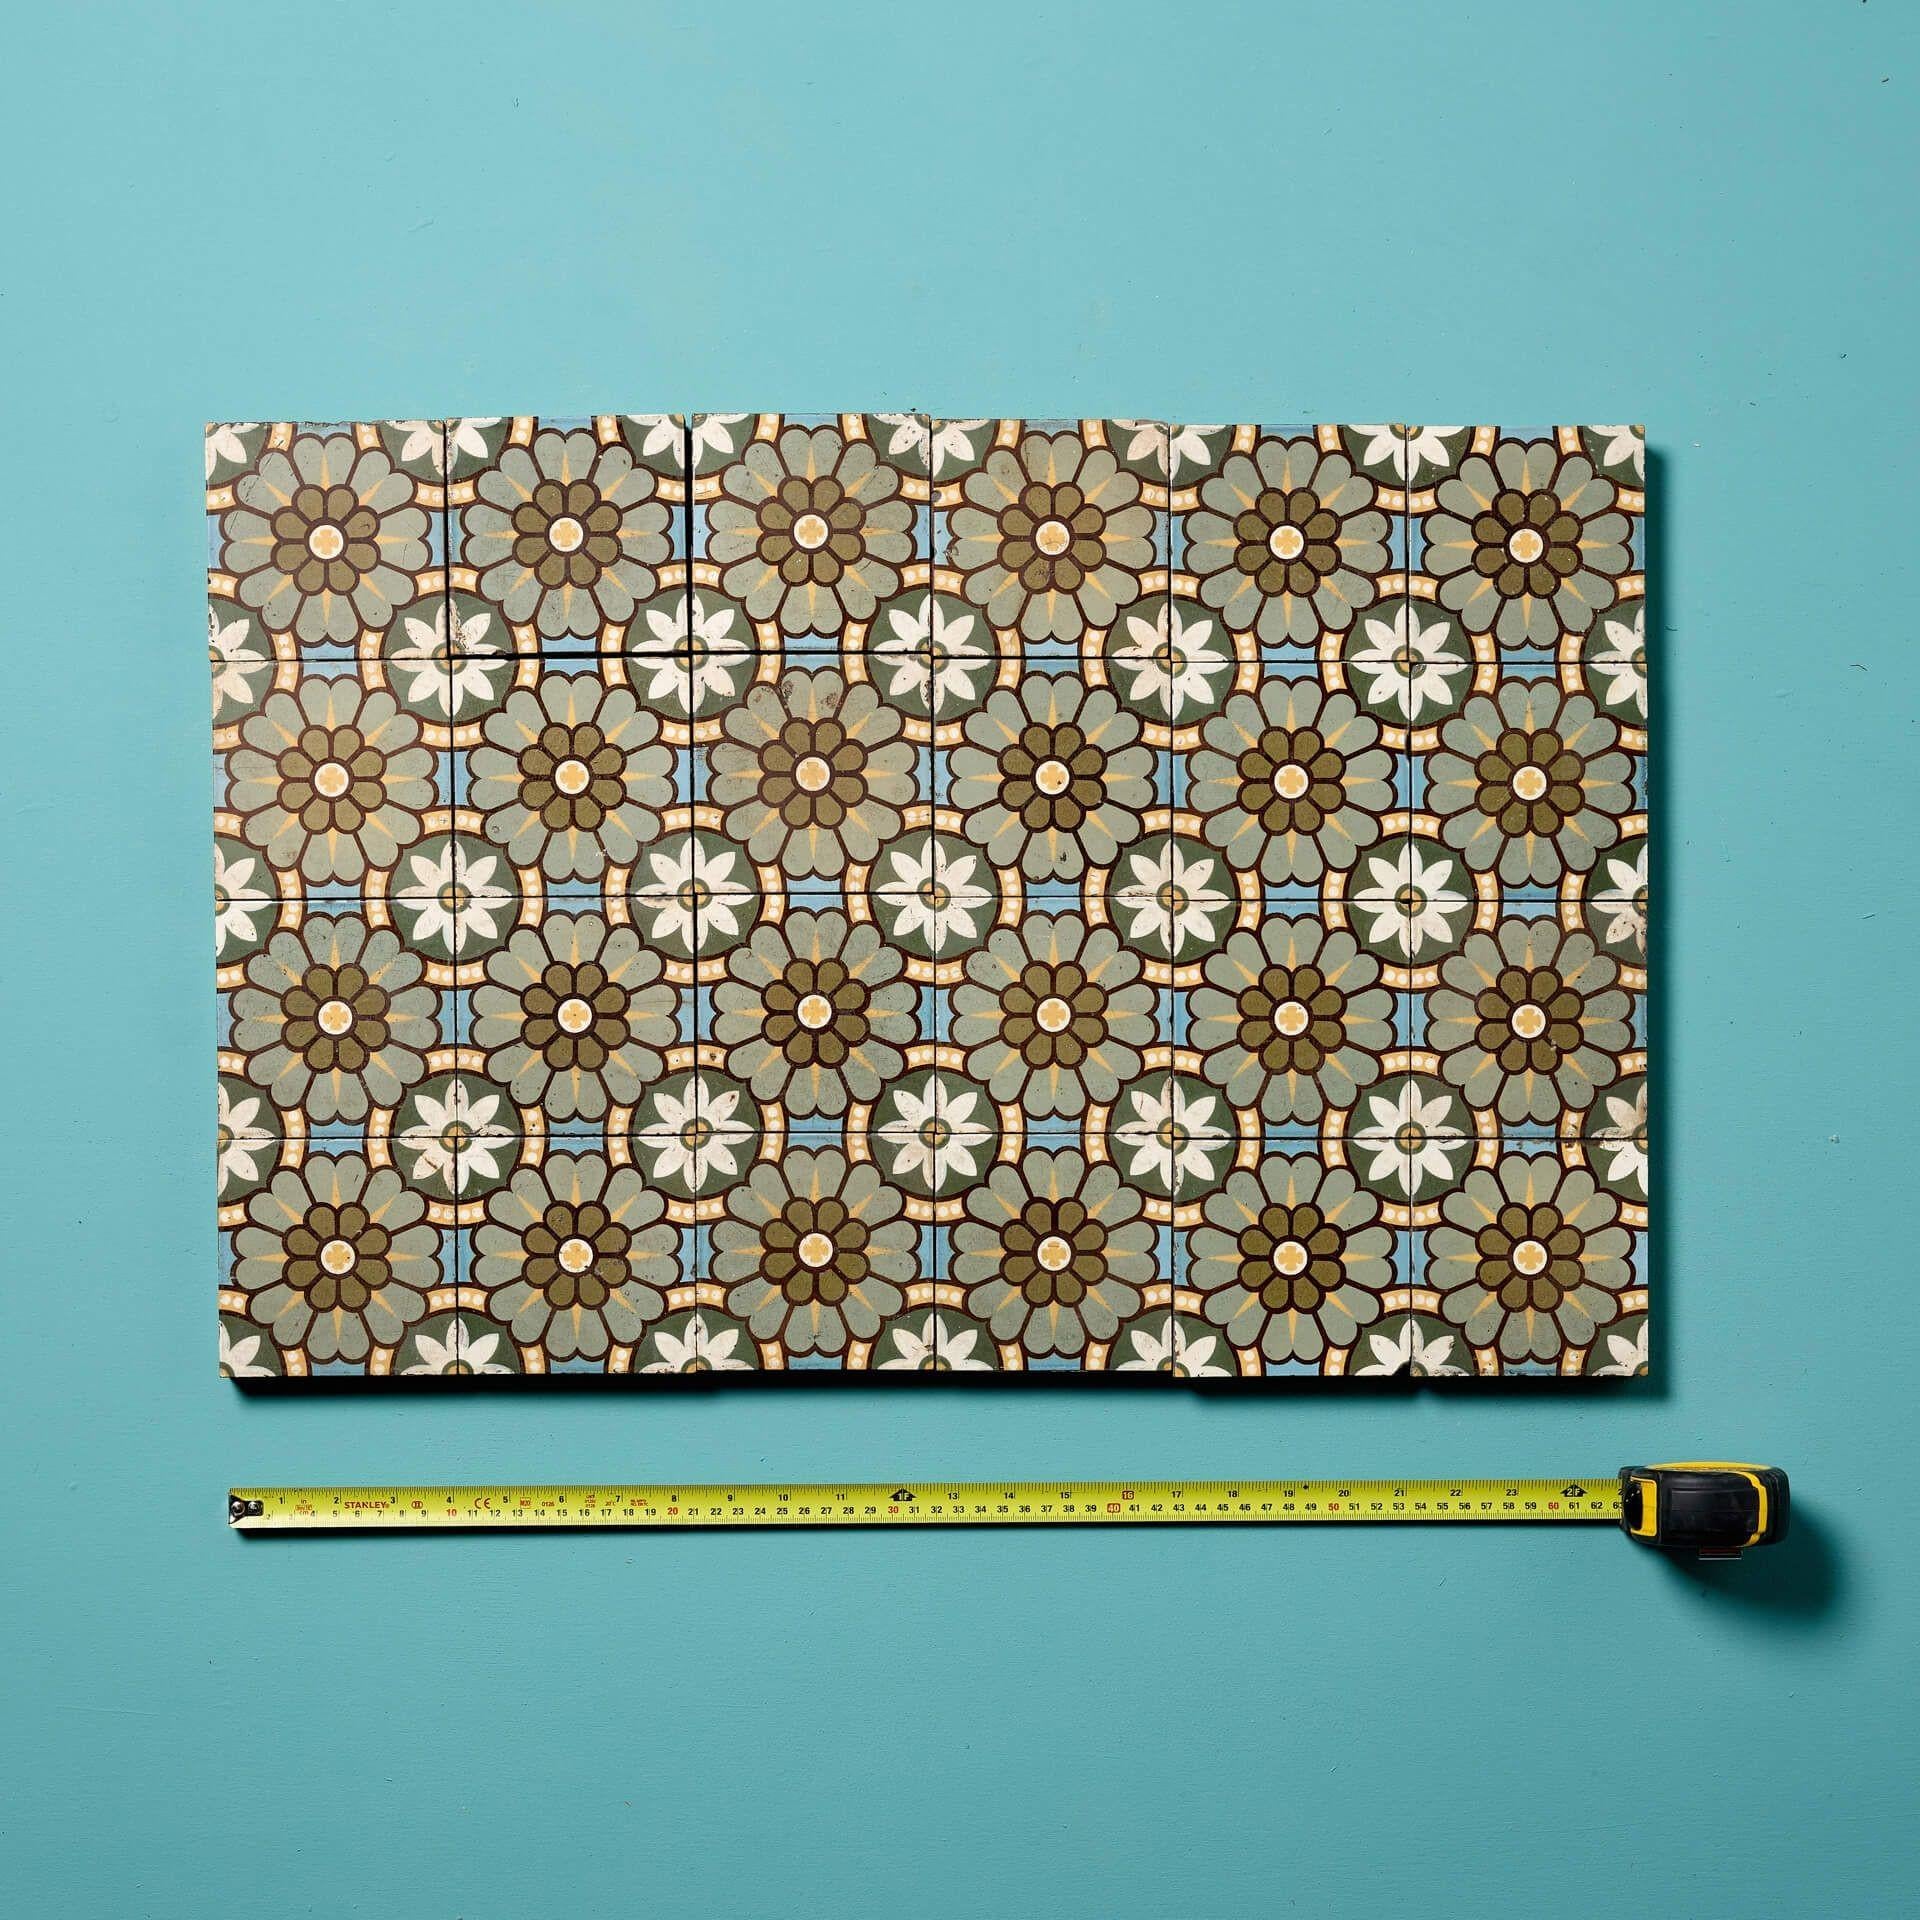 Un ensemble de 24 carreaux de sol en encaustique émaillée récupérés, représentant un motif floral, par W Godwin, Lugwardine.

Datant de la fin du XIXe siècle, ces carreaux de sol récupérés sont de style Pugin et présentent des couleurs naturelles